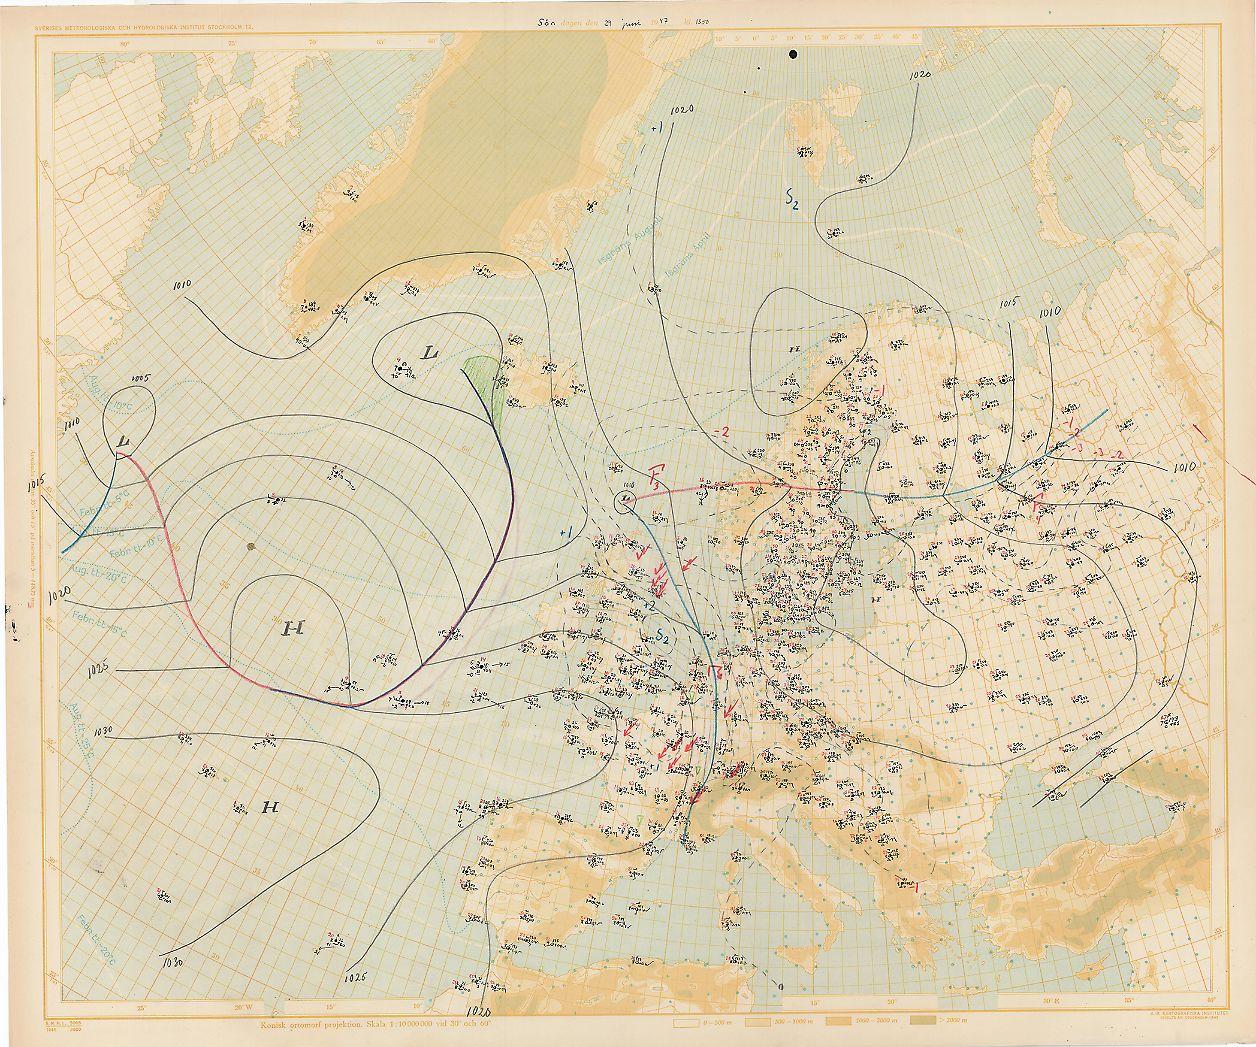 Väderanalys gällande klockan 13 den 29 juni 1947.